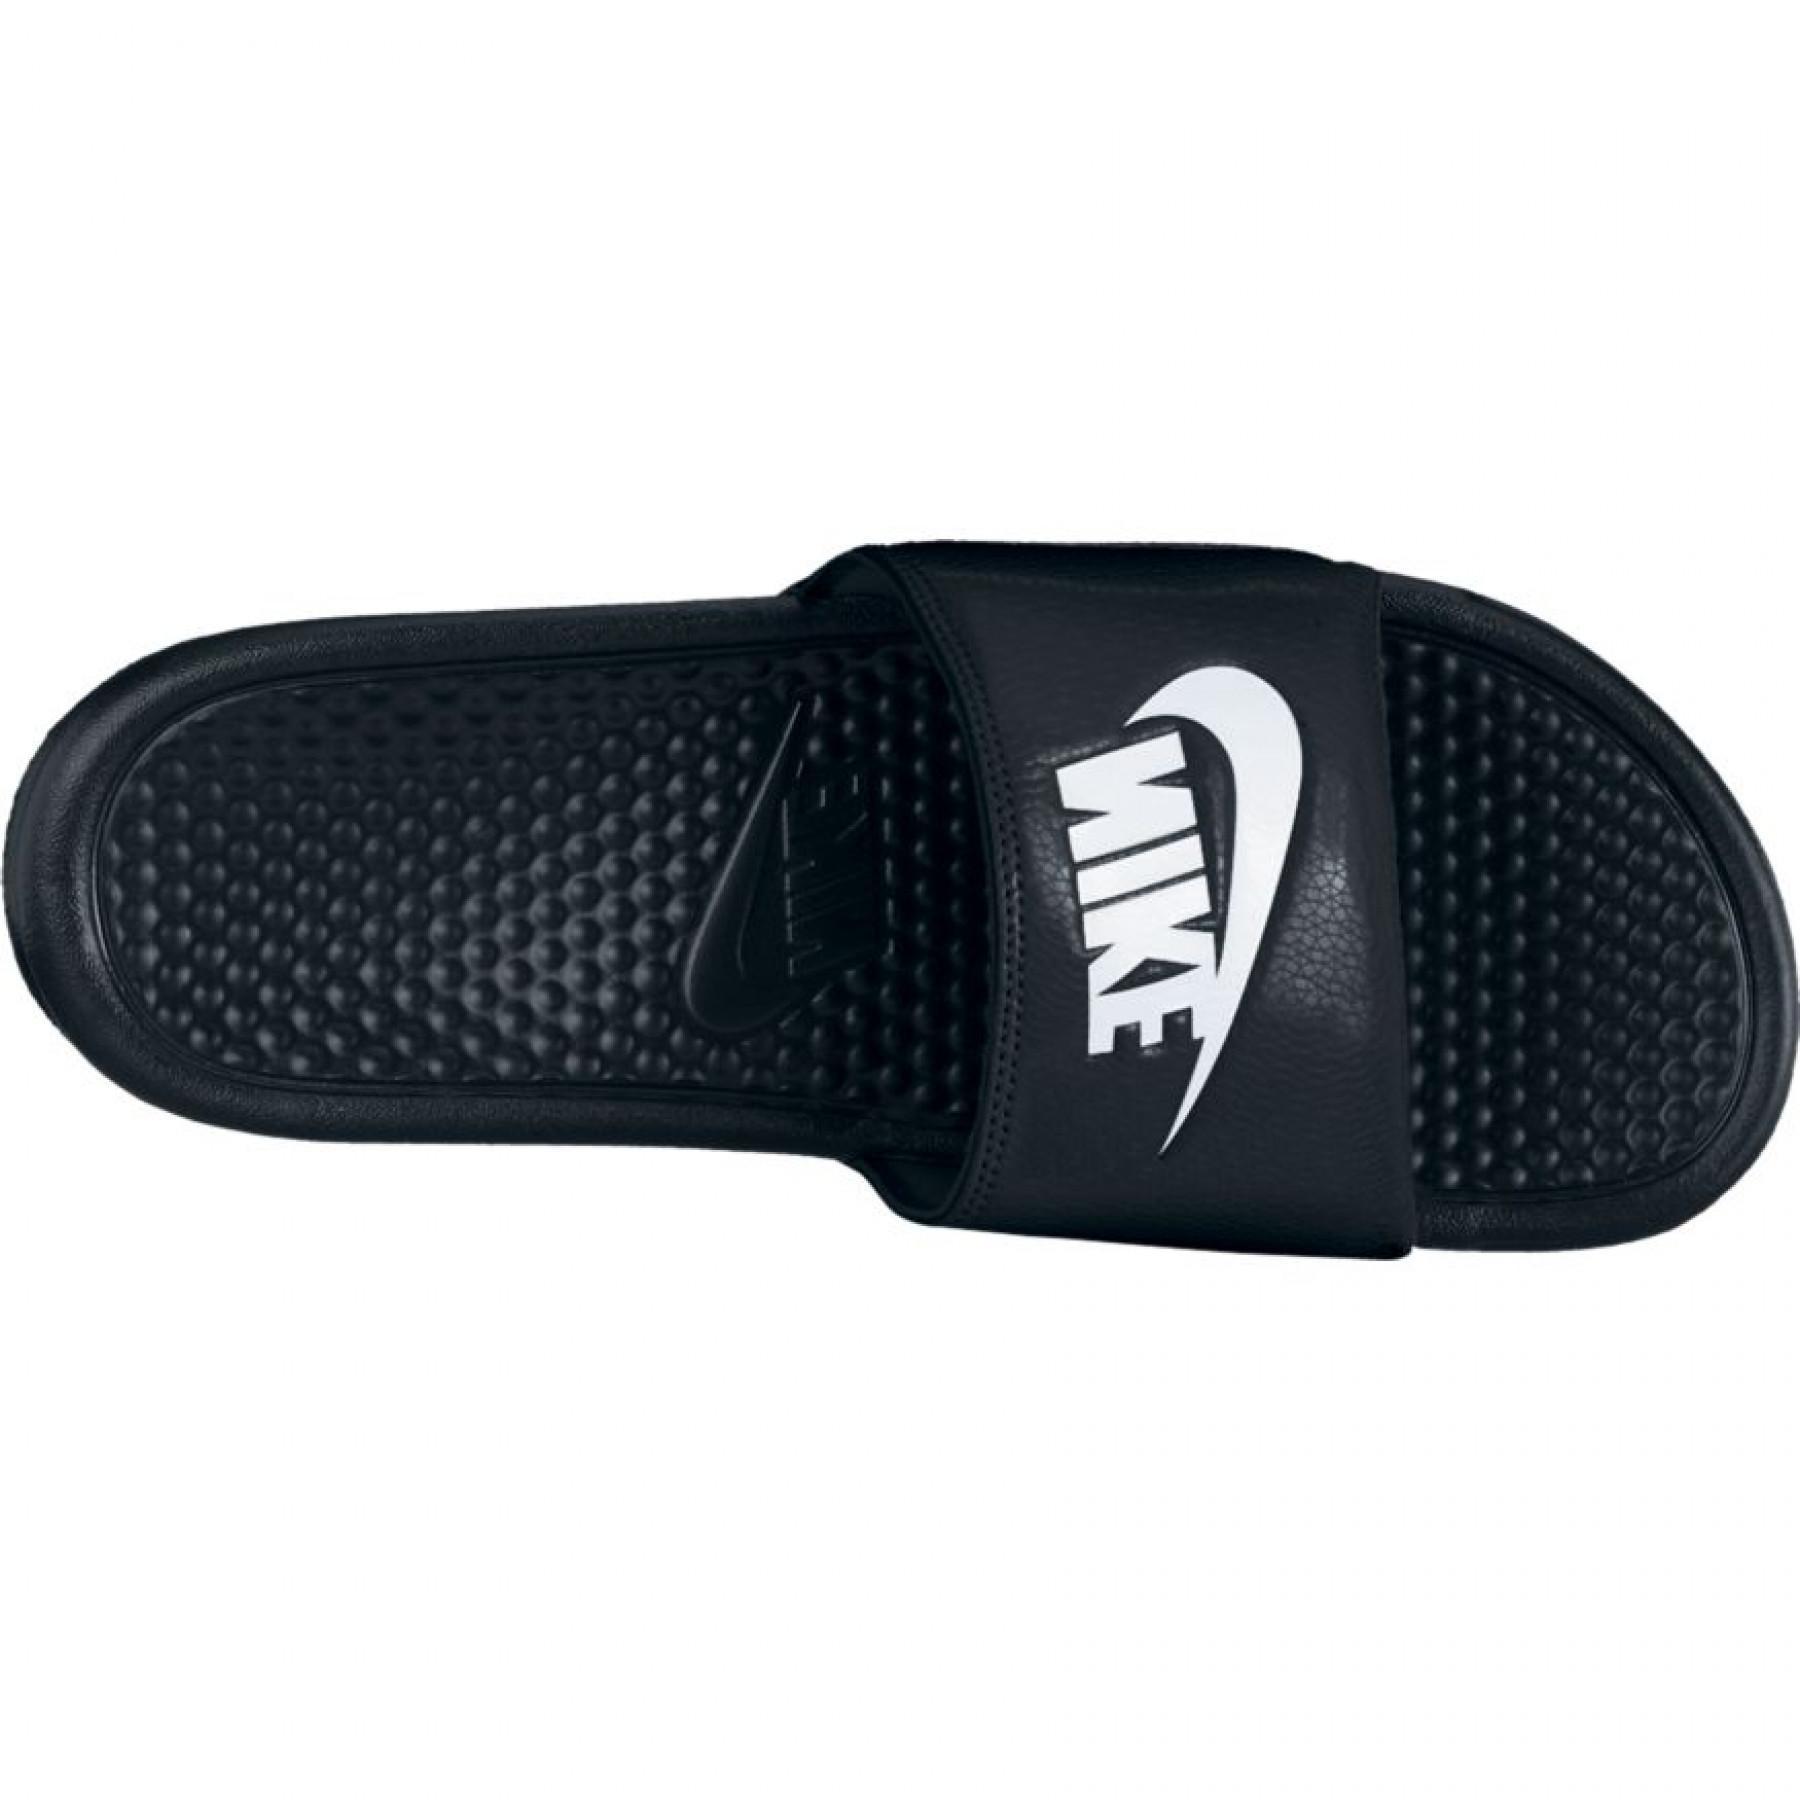 Sapatos de sapateado Nike Benassi Just do It